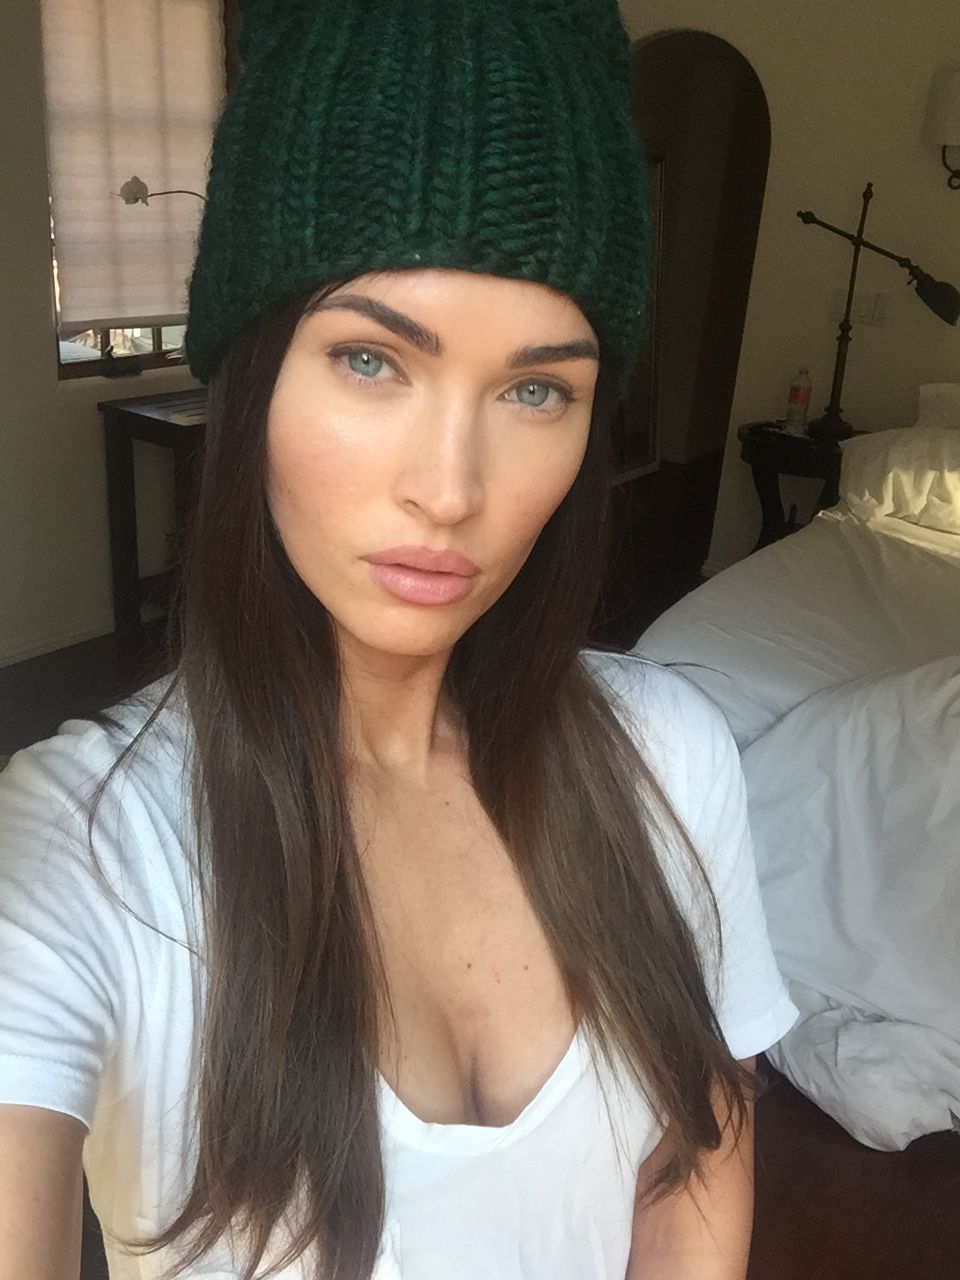 Megan Fox â€“ Personal pics